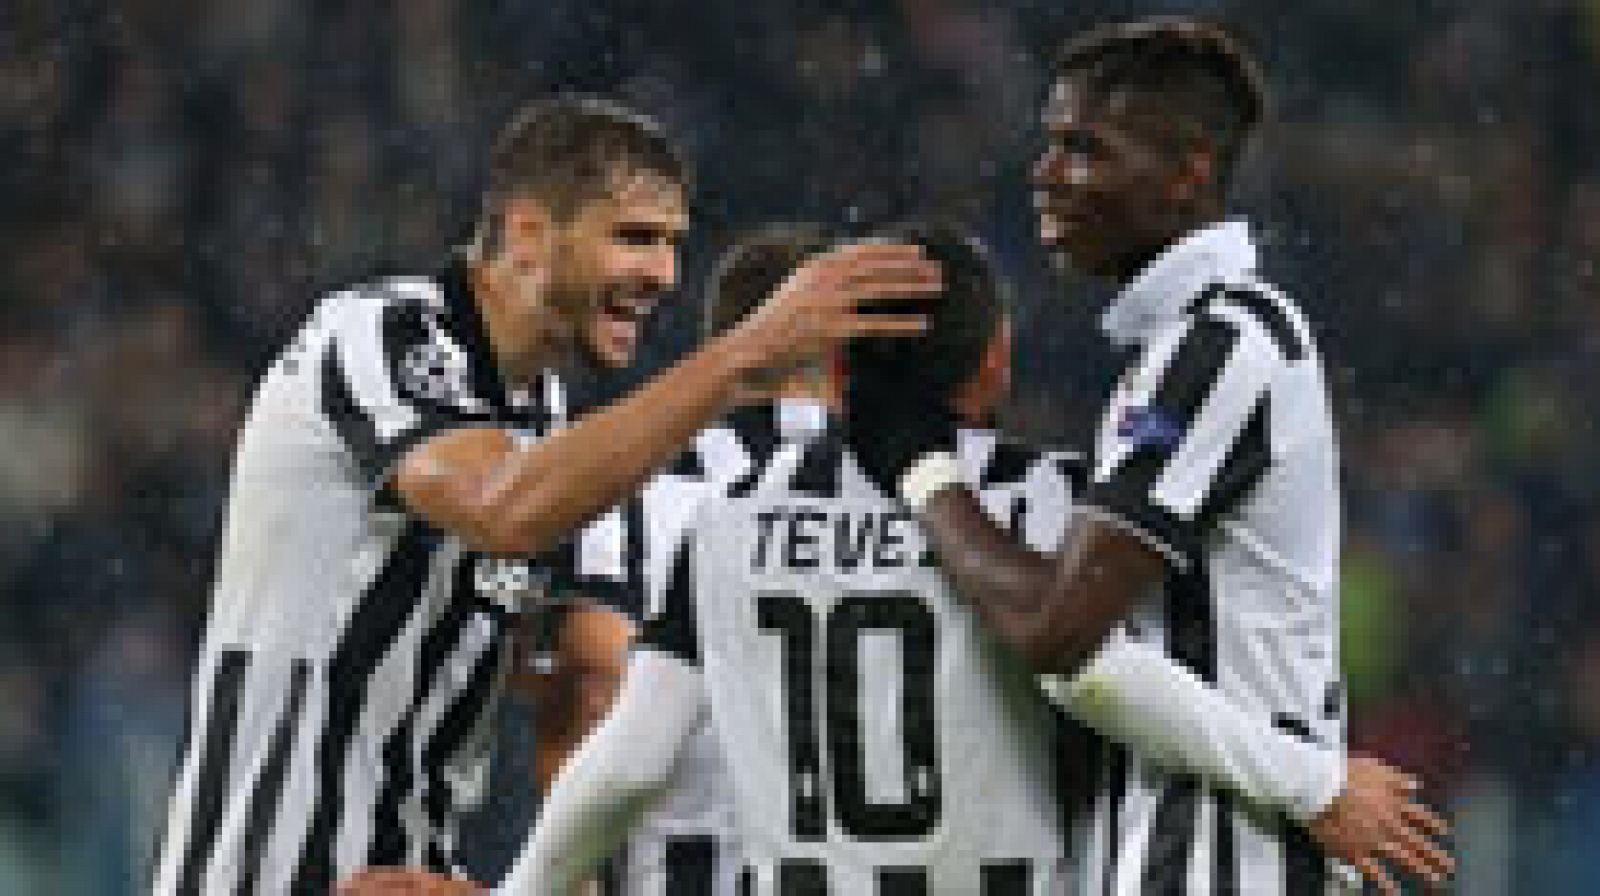 La Juventus de Turín sigue con opciones de pasar a octavos de final de la Liga de Campeones, después de haber vencido hoy por 3-2 al Olympiacos en casa, con goles del español Fernando Llorente, el veterano Andrea Pirlo y Paul Pogba.